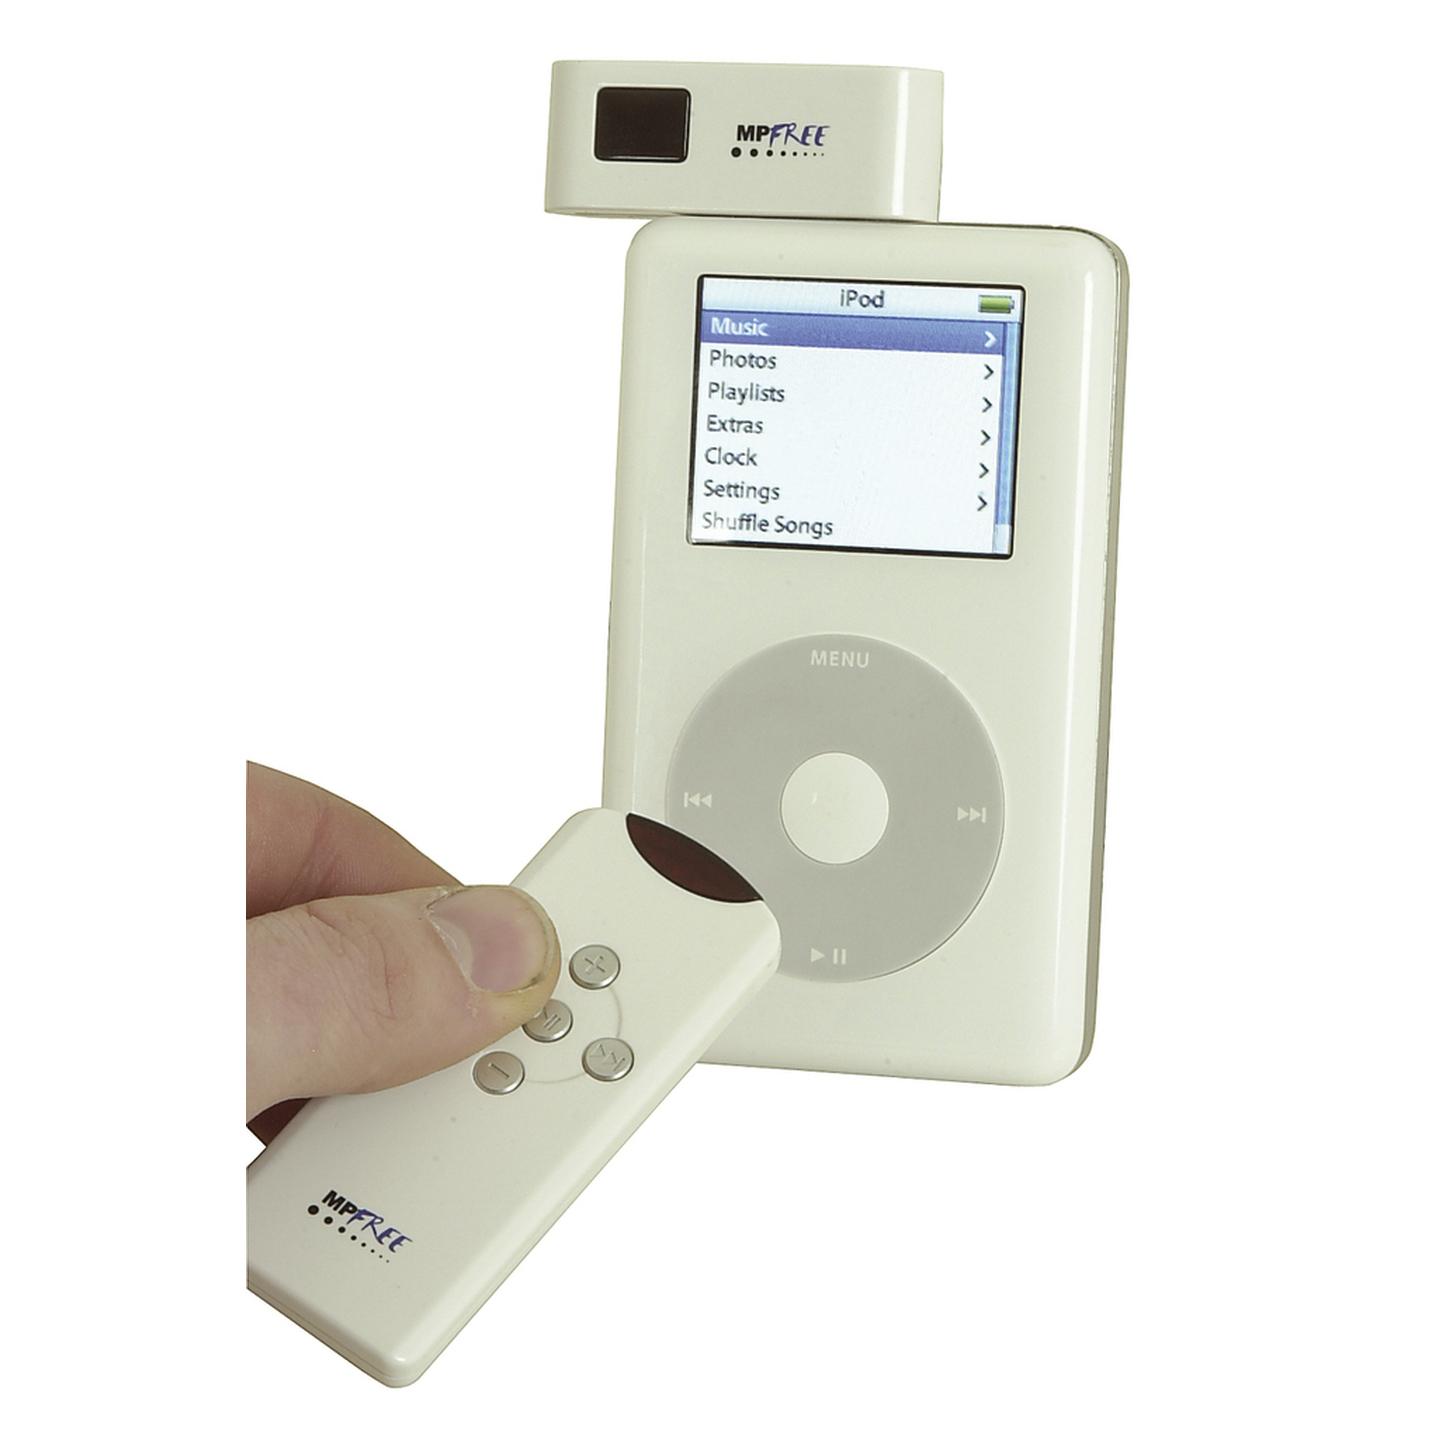 Wireless Remote Control for iPod & iPod Mini